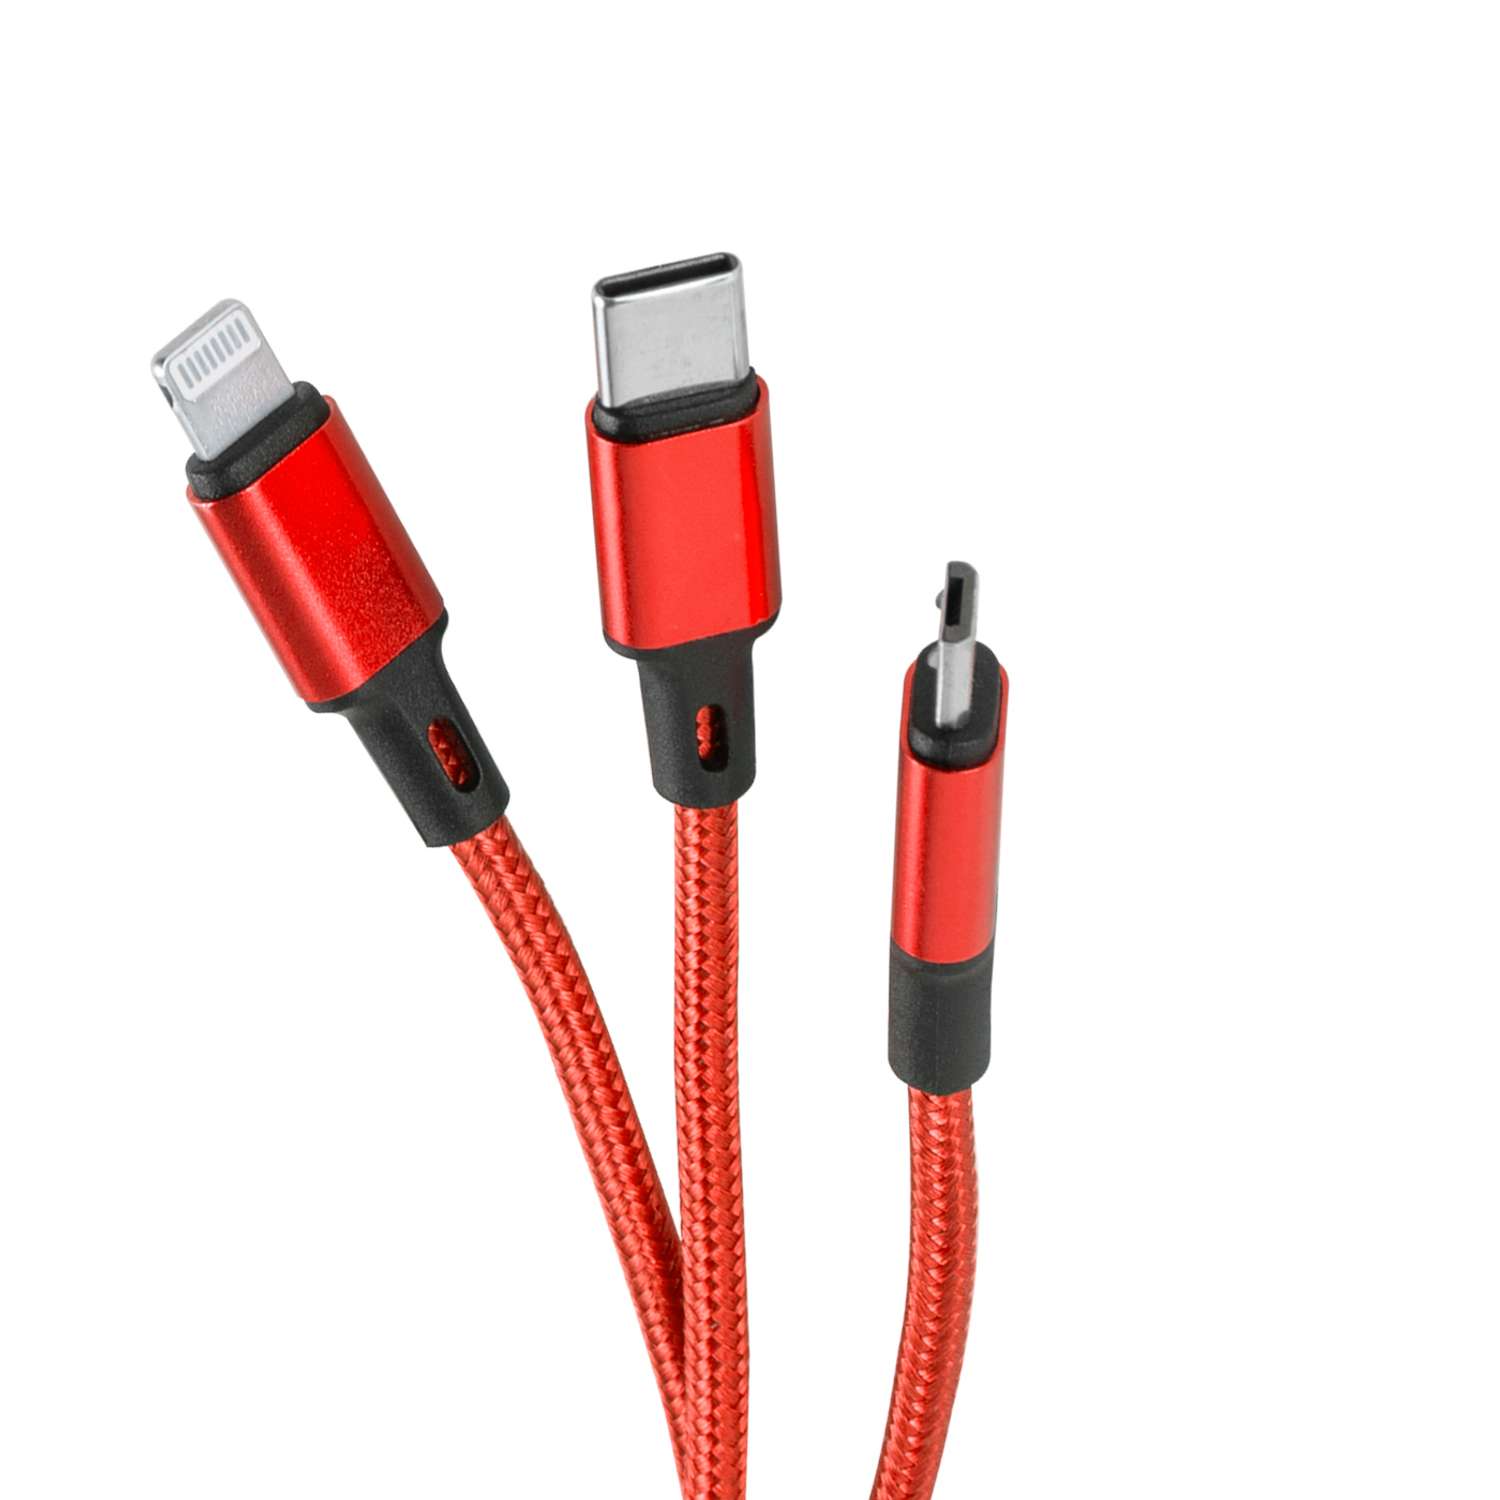 Дата-кабель mObility USB -Type-C/8 - pin/micro USB (3 в 1) нейлоновая оплетка красный - фото 2